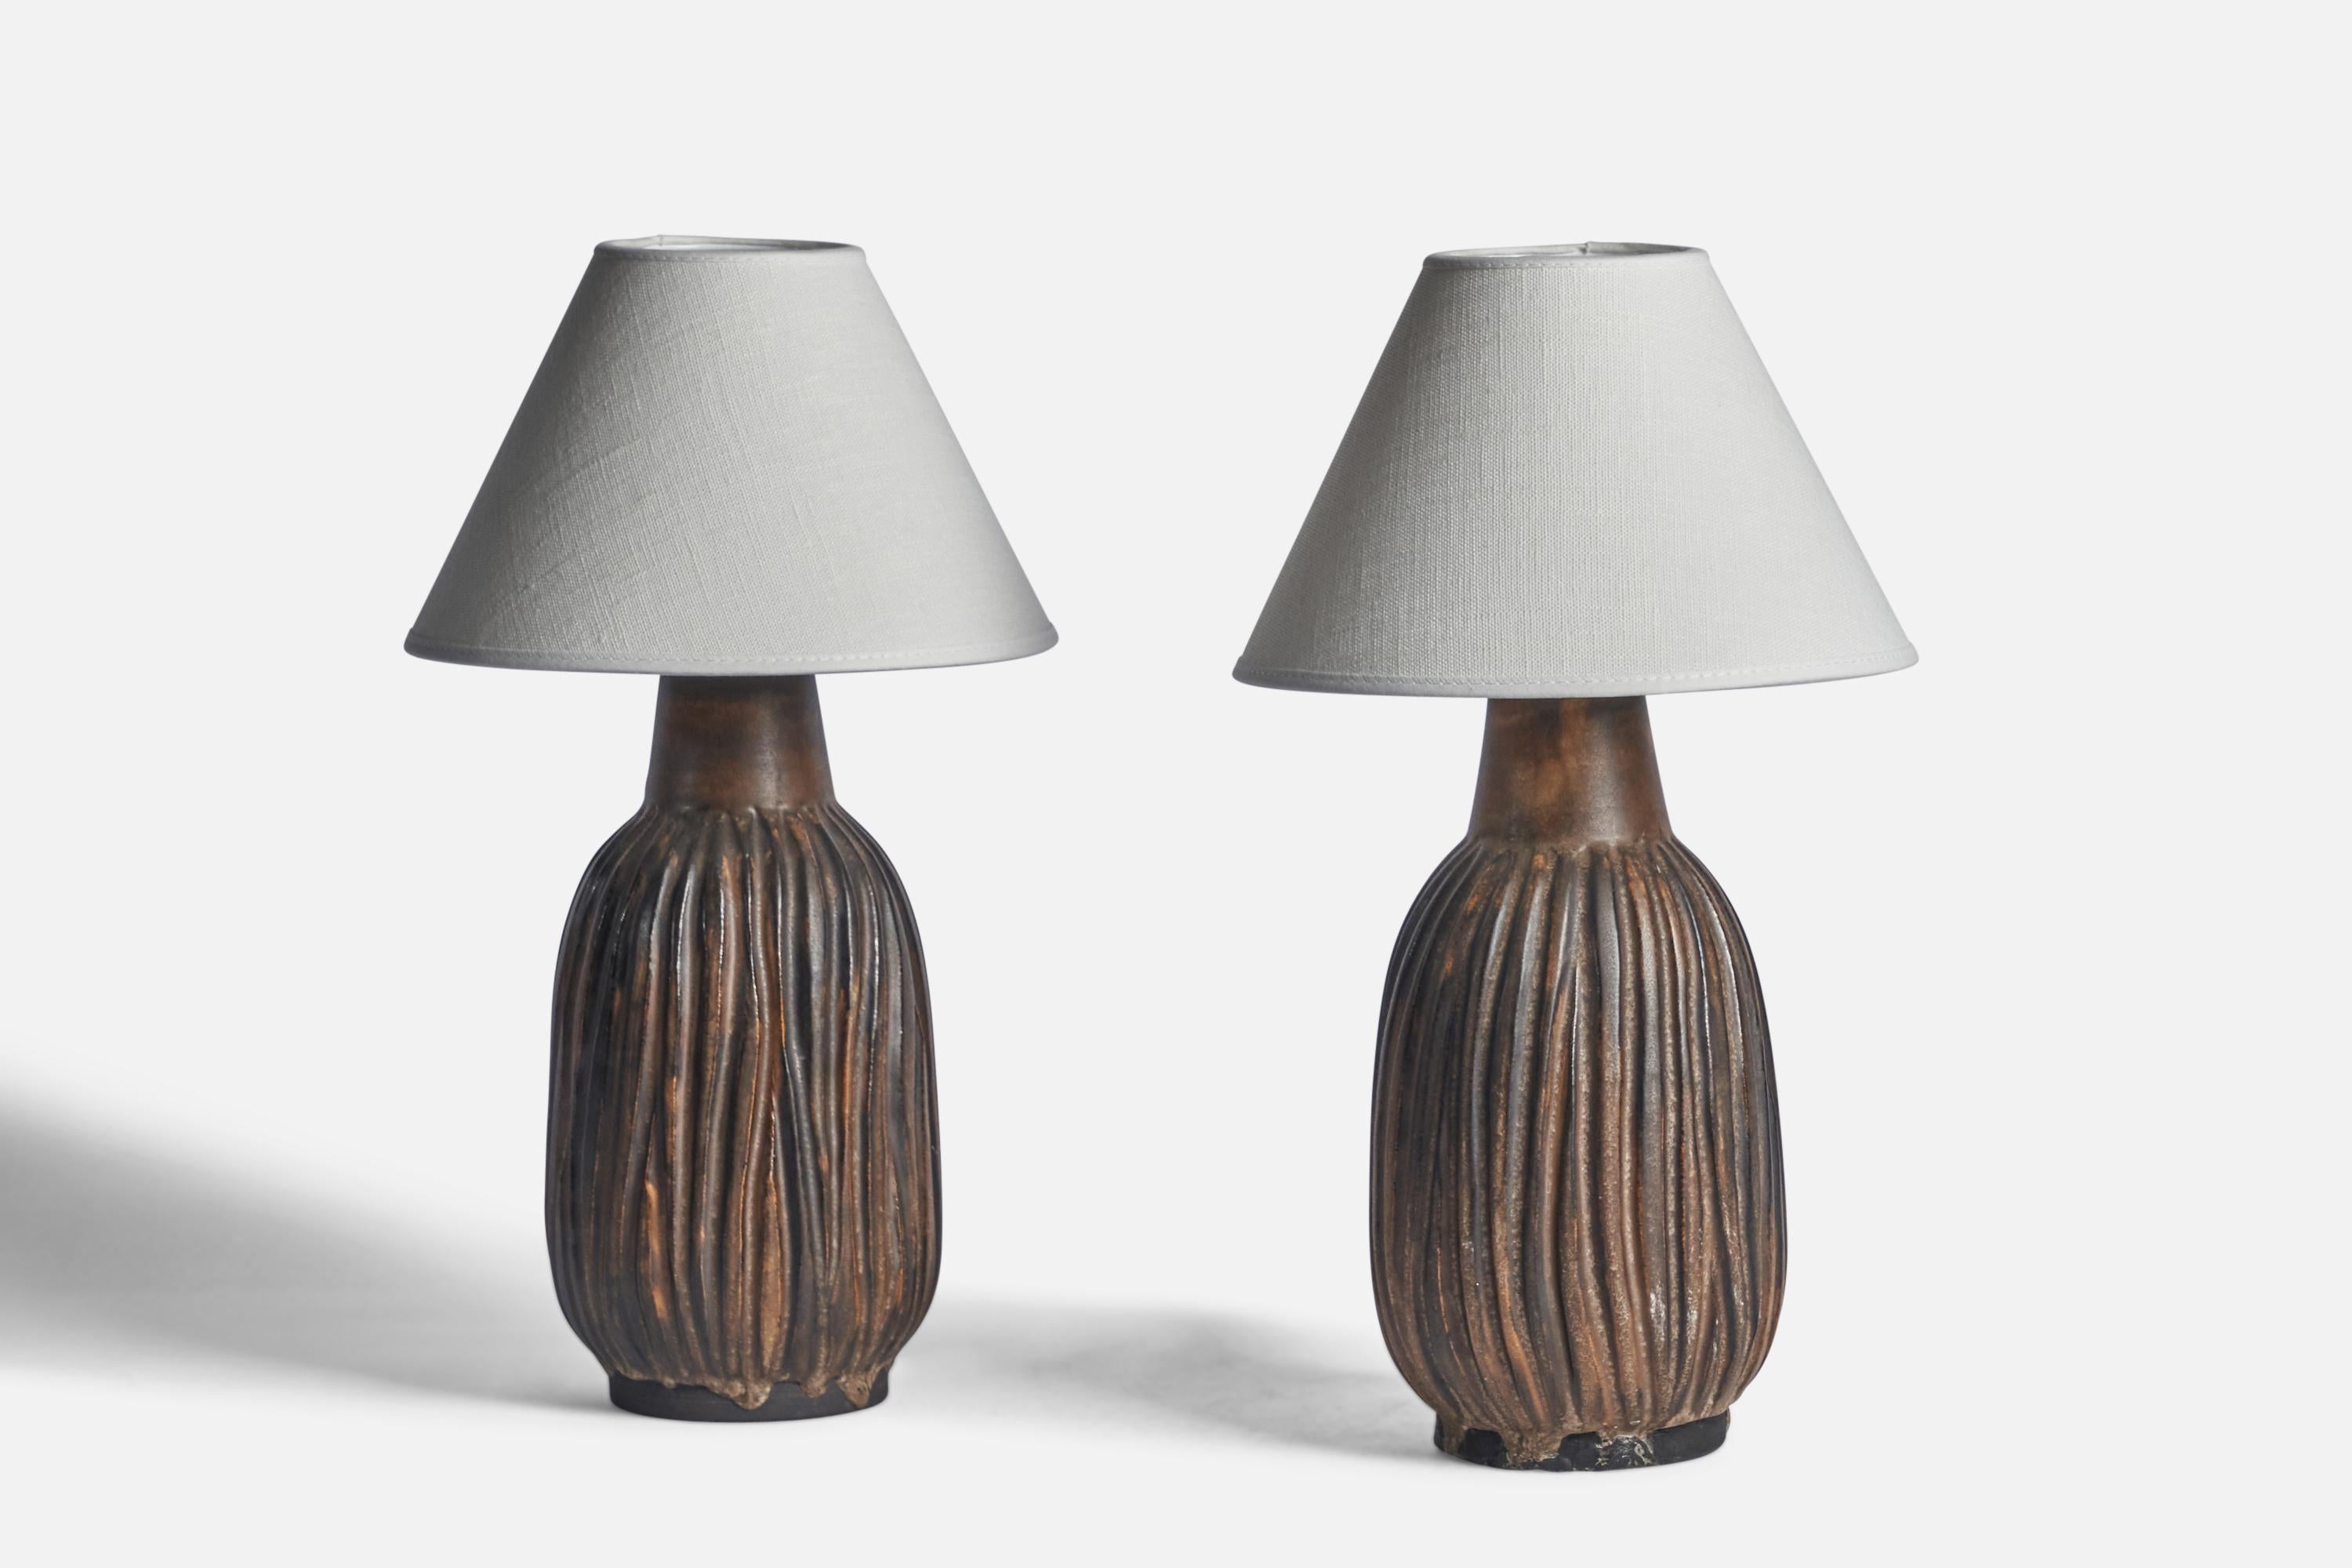 Paire de lampes de table cannelées en verre brun, conçues par Irma Yourstone et produites par Lerlaxen, Suède, années 1960.

Dimensions de la lampe (pouces) : 11.65